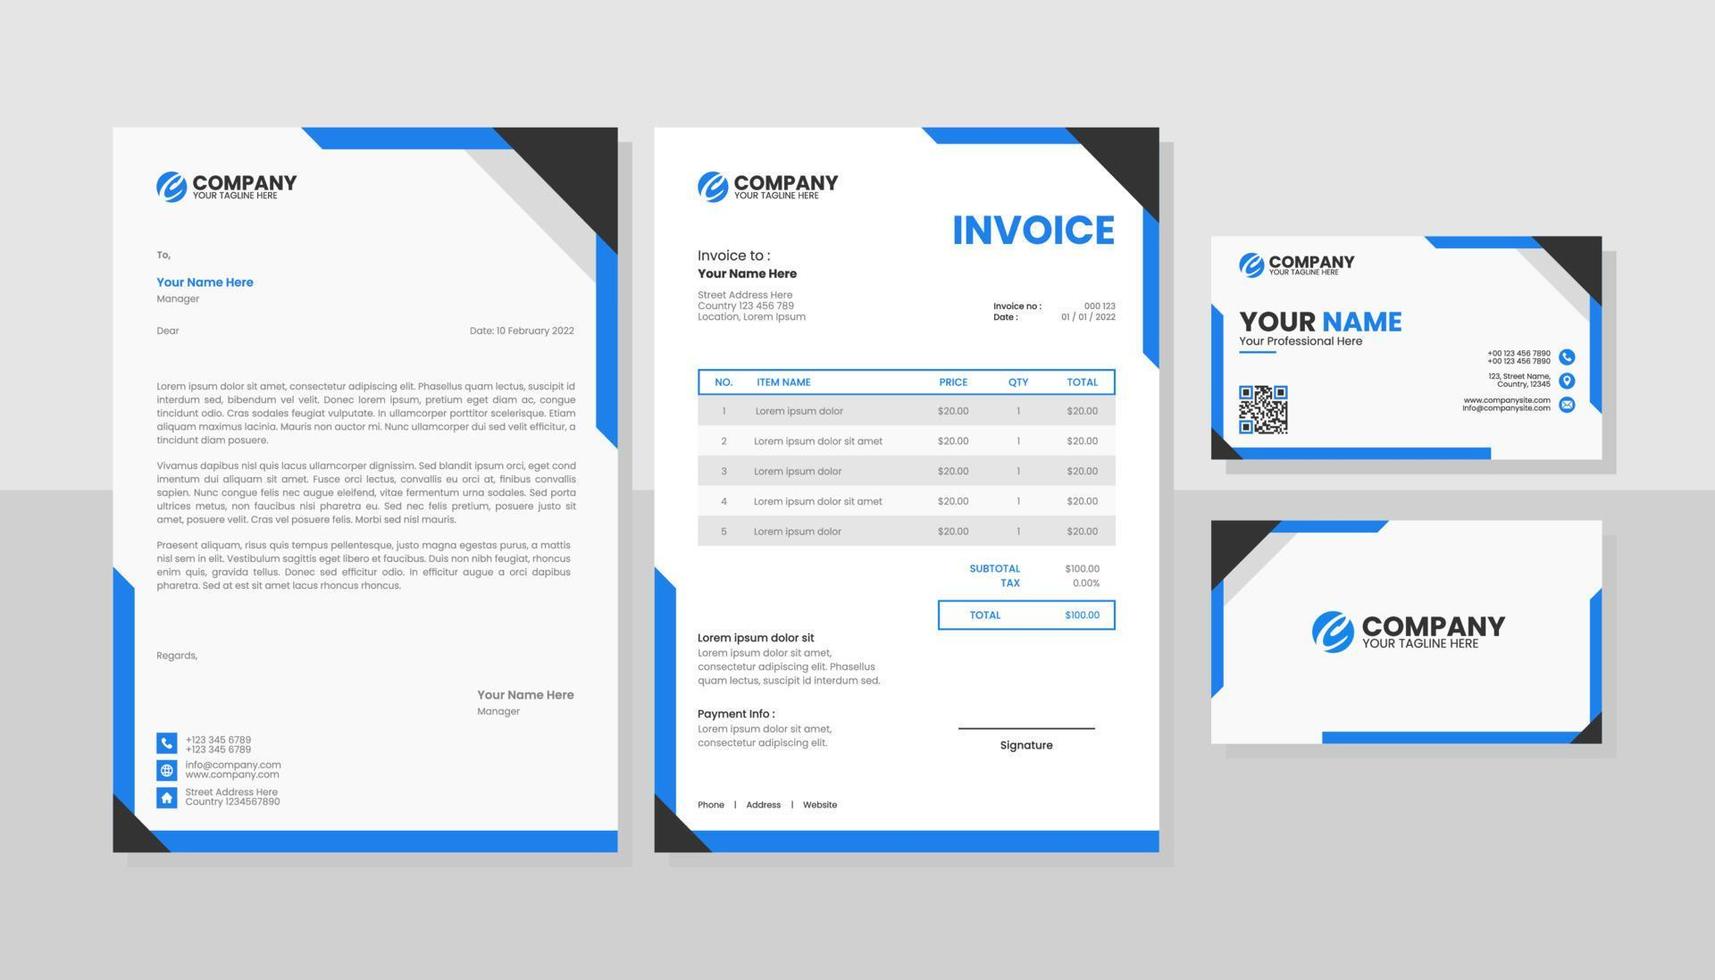 moderne set briefpapier business pack vector